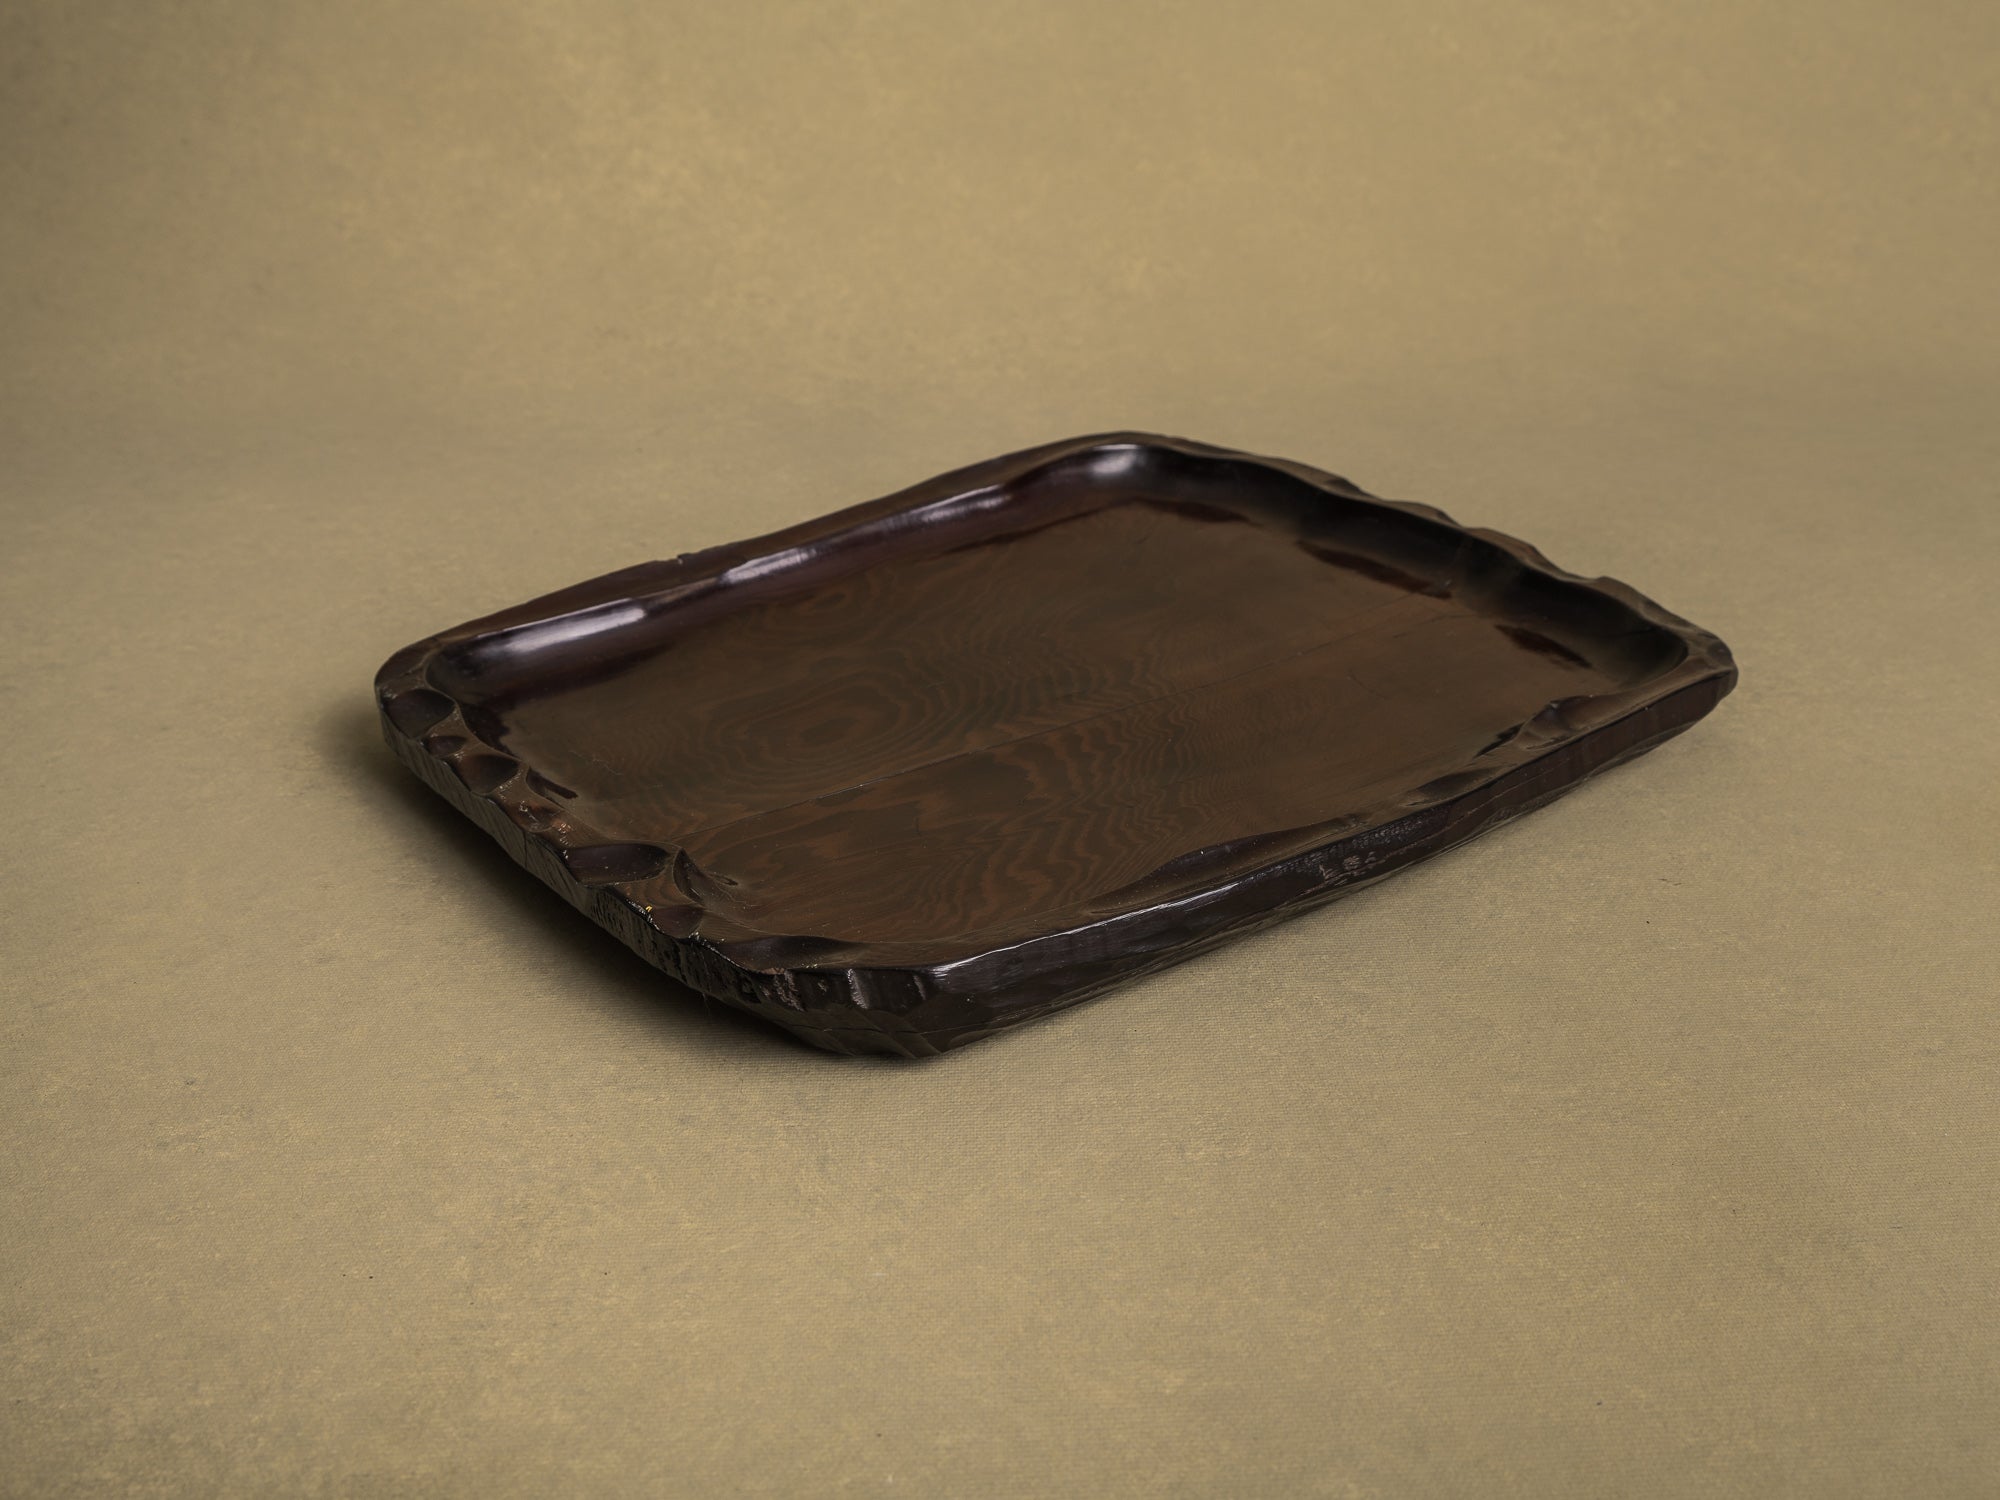 Coupe monoxyle / plateau à thé pour la cérémonie du thé, Japon (vers 1850-80)..Bowl / Mingei tea tray for senchabon tea ceremony, Japan (circa 1850-80)